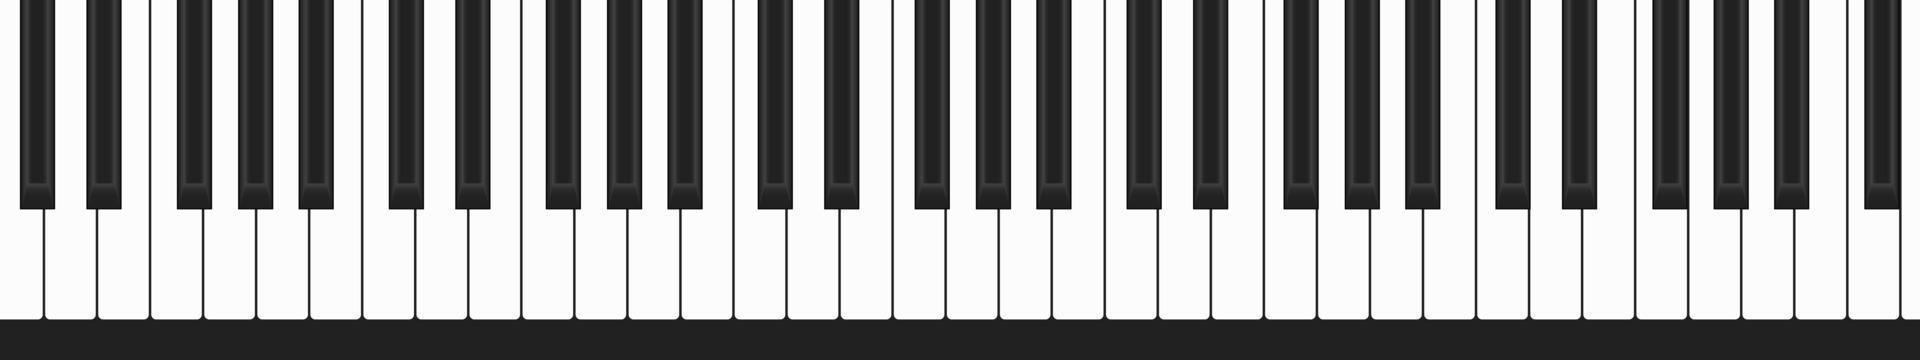 clavier de piano, rangée de touches noires et blanches, grandes notes classiques, illustration de musique vectorielle vecteur